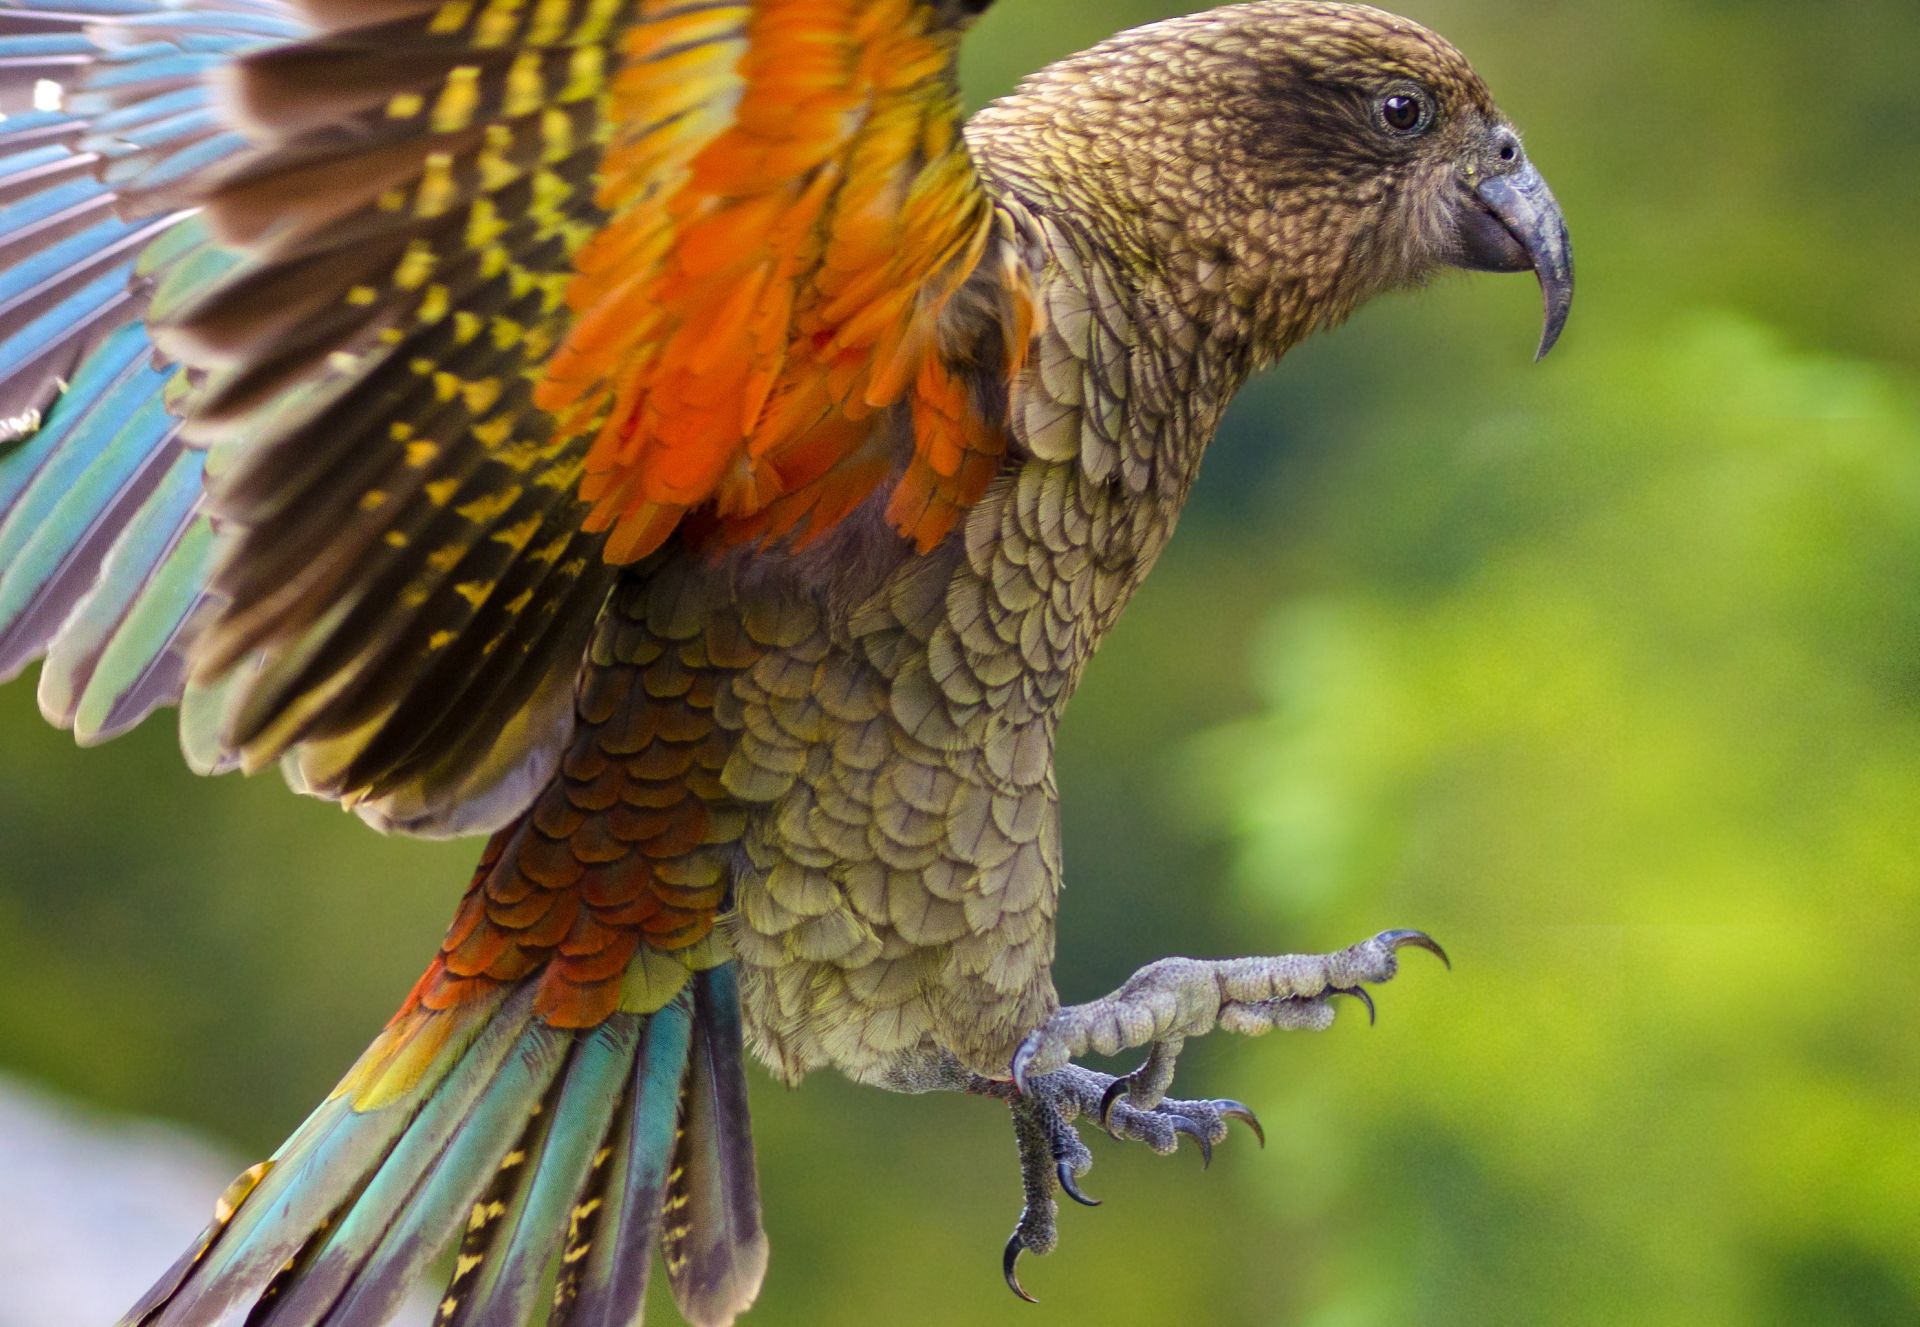 Редки новозеландски птици  вероятно са избягали високо  в планините от хората